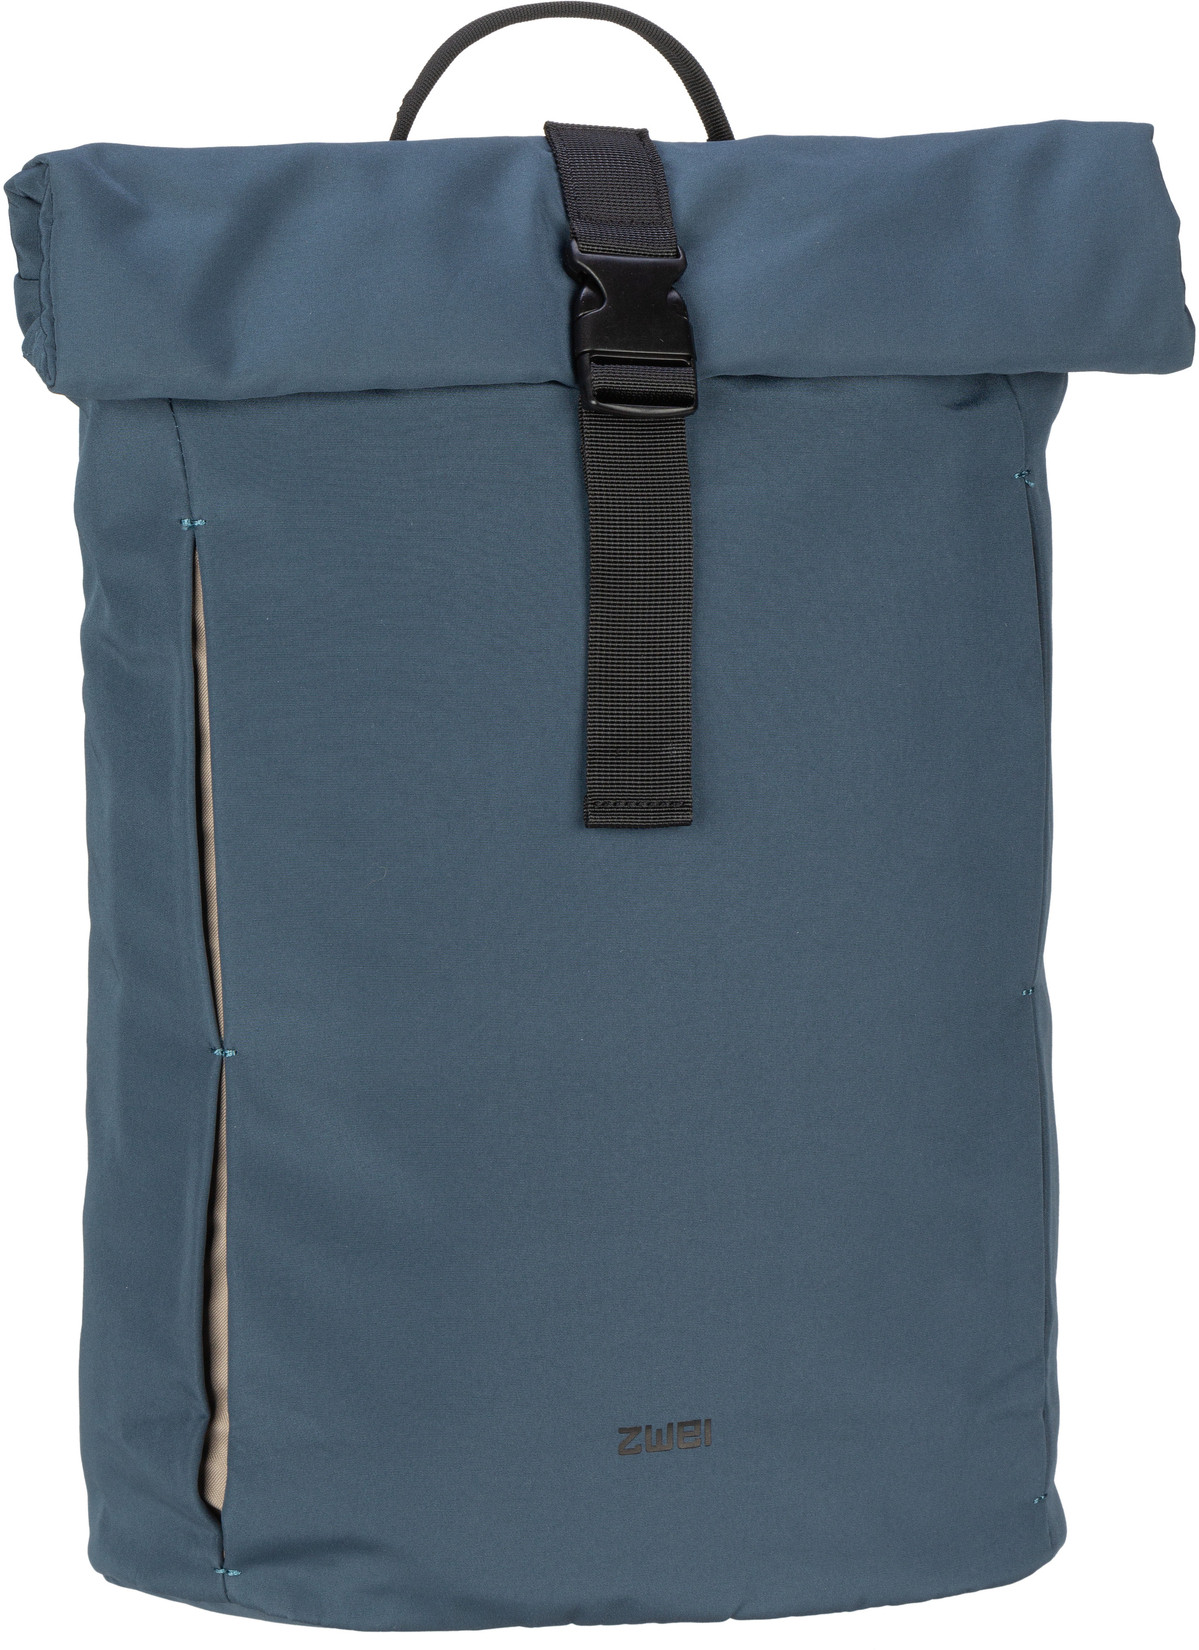 zwei Rucksack Daypack Toni TOR250 Denim (13 Liter)  - Onlineshop Taschenkaufhaus